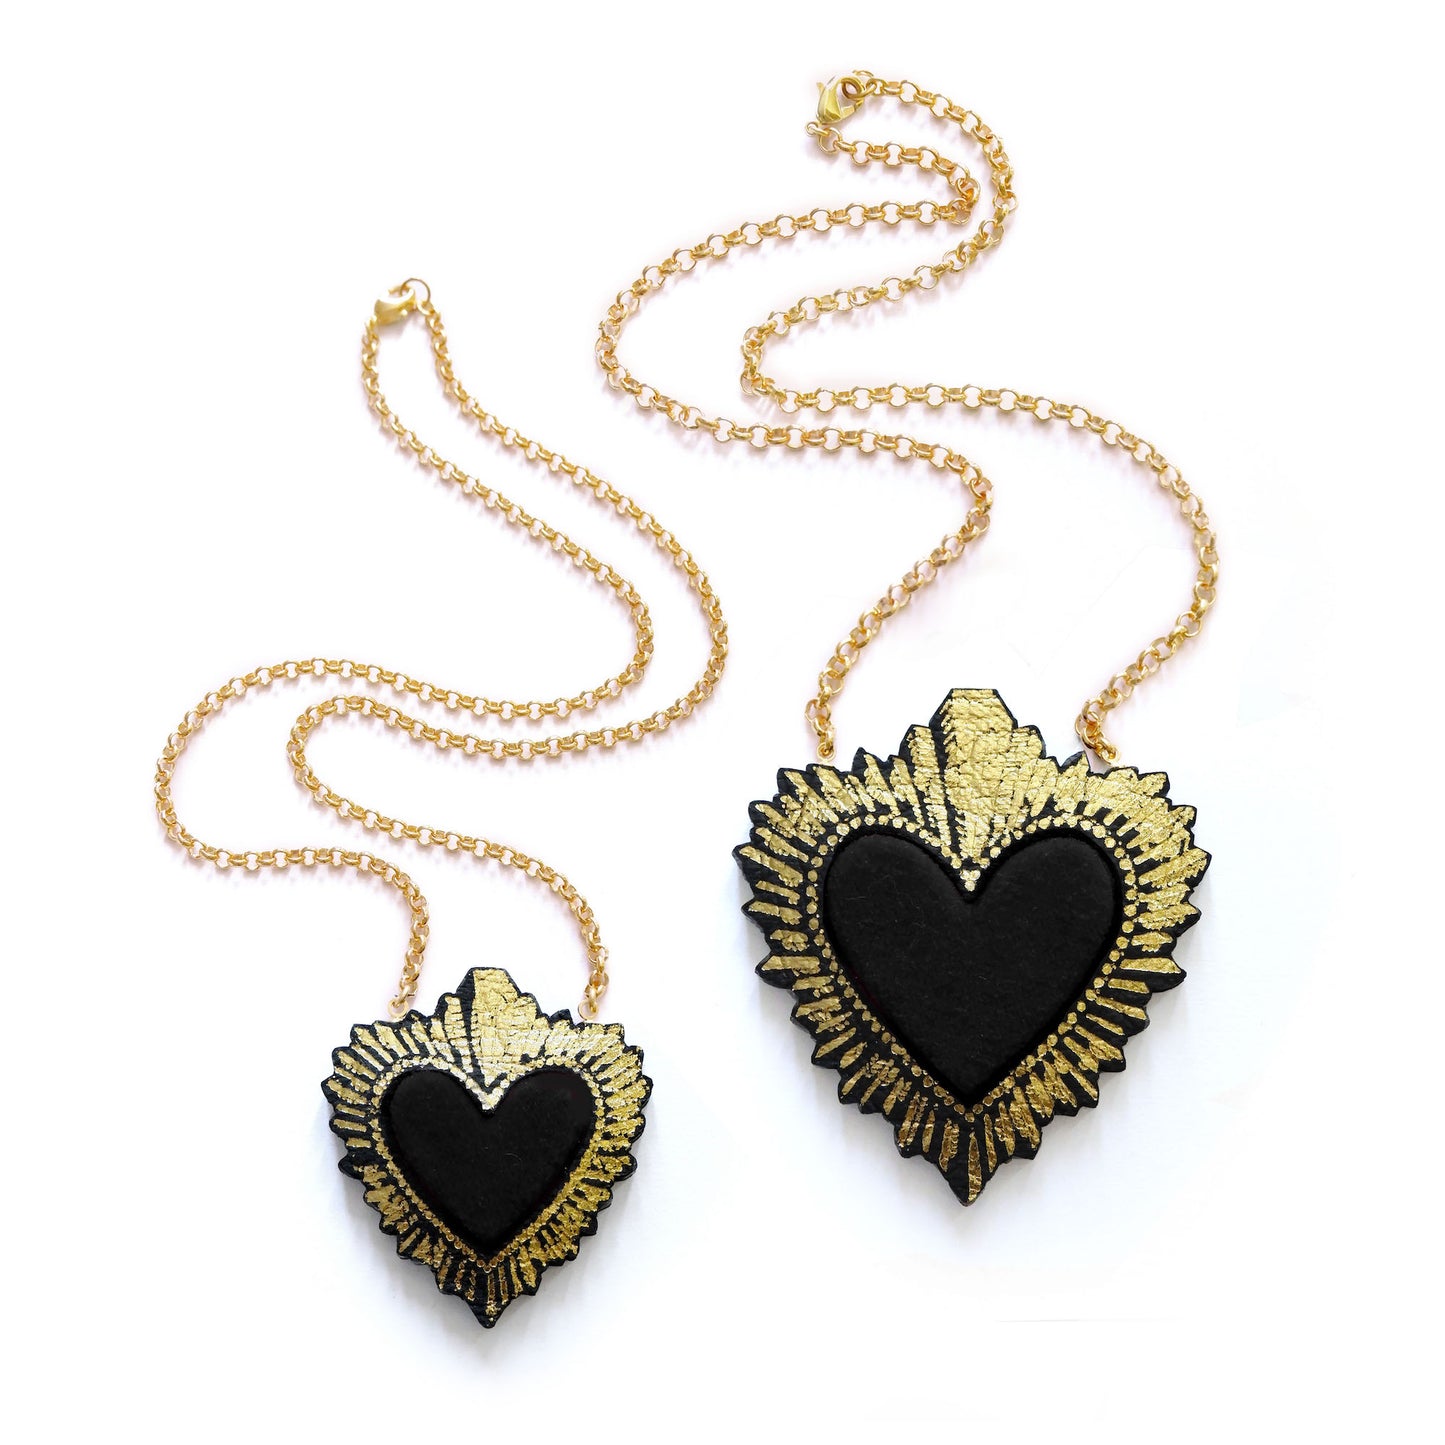 two sizes of black velvet sacred heart pendant necklace, on gold belcher chain